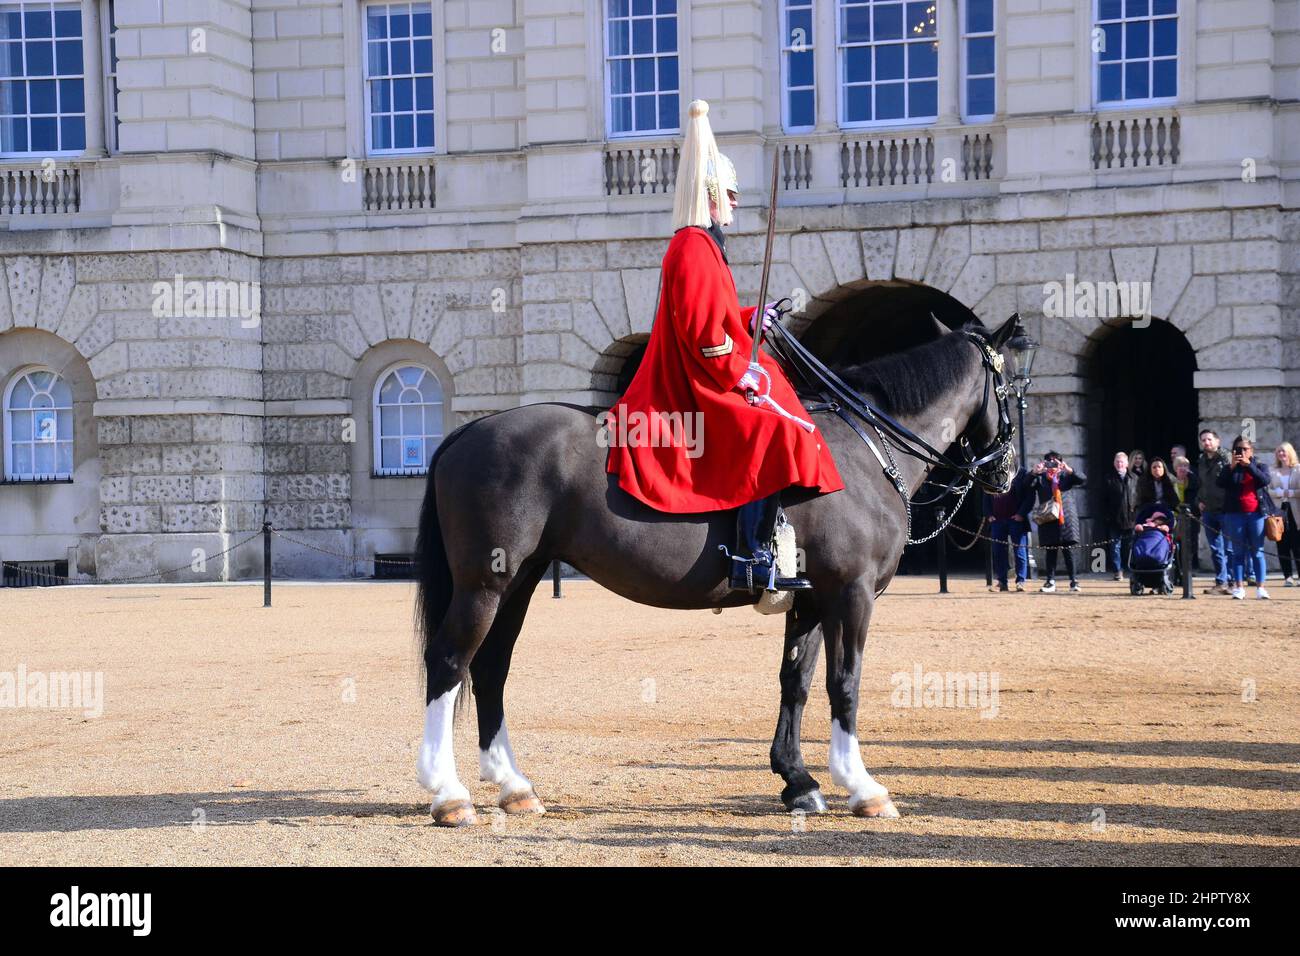 La cérémonie de changement de la Queen's Life Guard à l'occasion de la parade des gardes à cheval, au large de Whitehall, Londres, Royaume-Uni. Soldats du Régiment à cheval de la Cavalerie de ménage. Banque D'Images